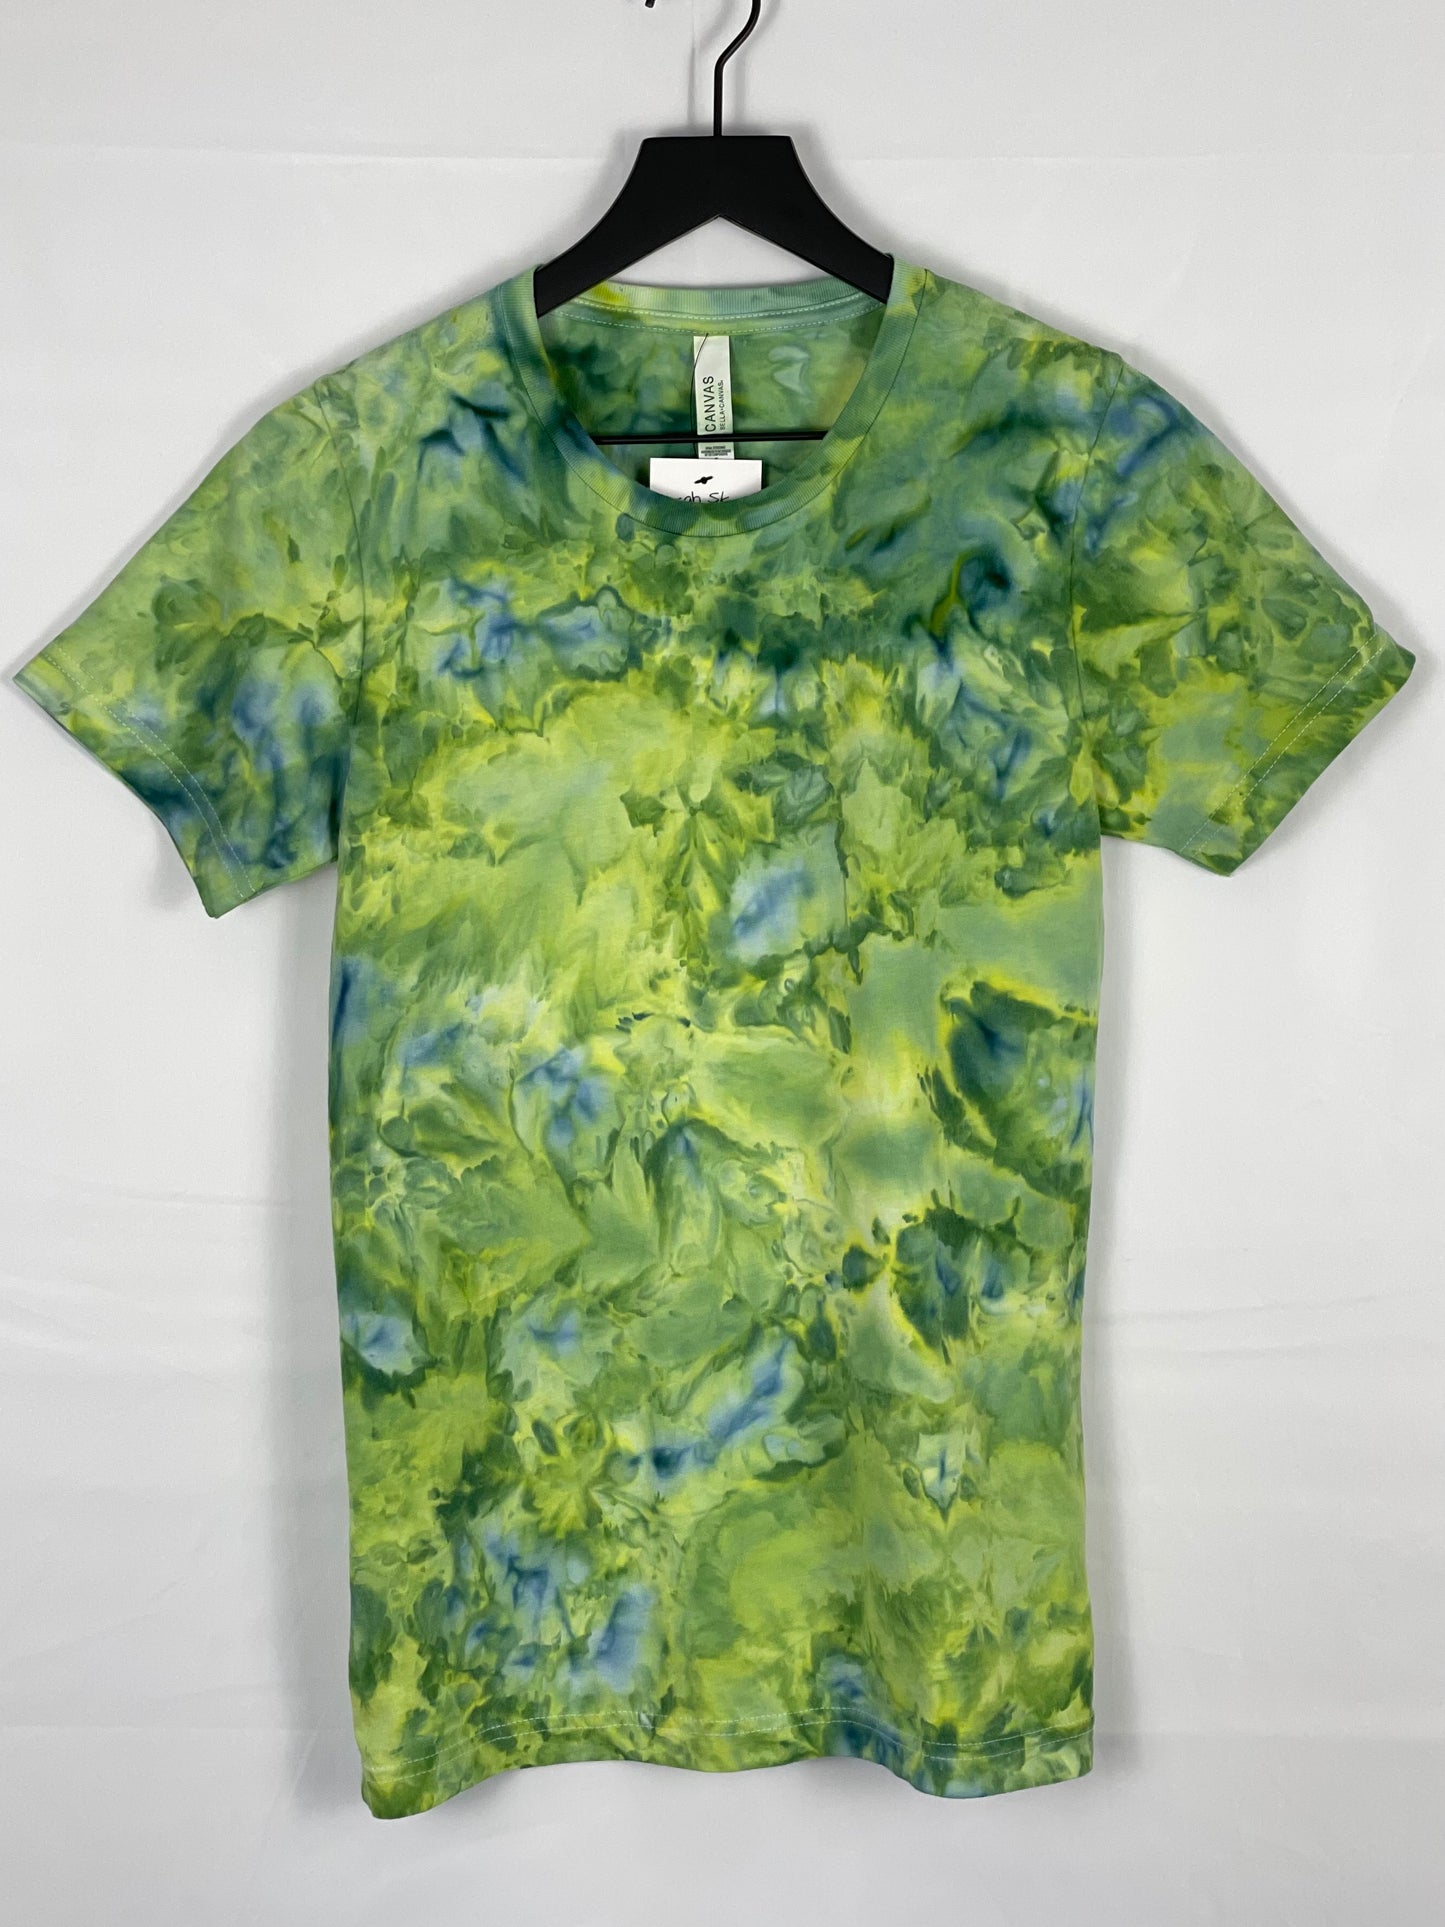 Treefrog Ice-Dyed Adult Unisex T-shirt